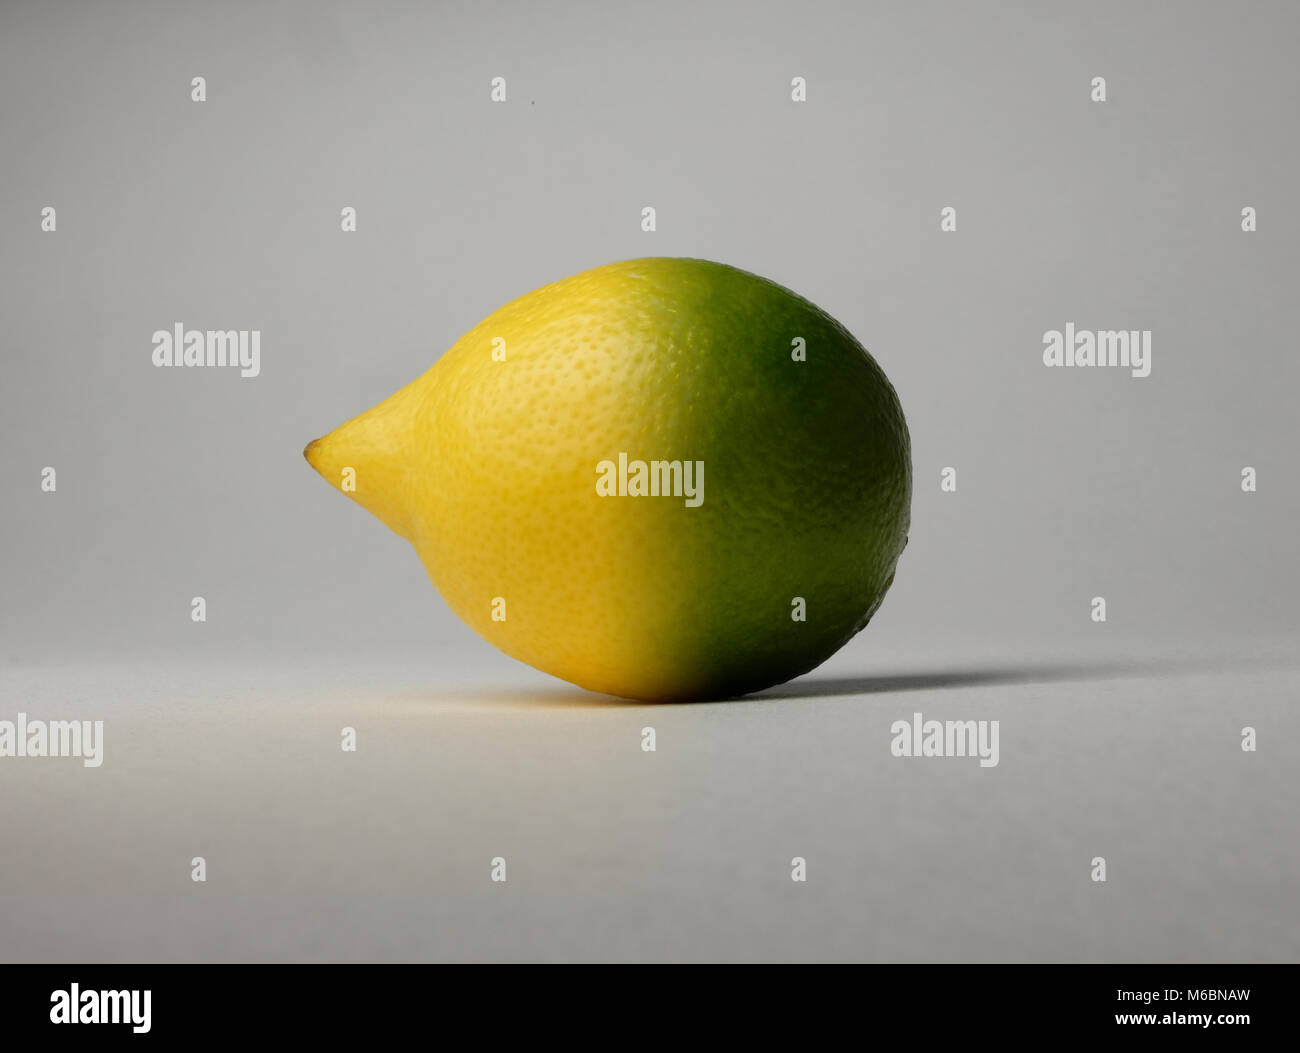 Limón y Lima fotografía híbrida, dos frutos cítricos acidulada casado combinados combinados en uno superfruit Foto de stock